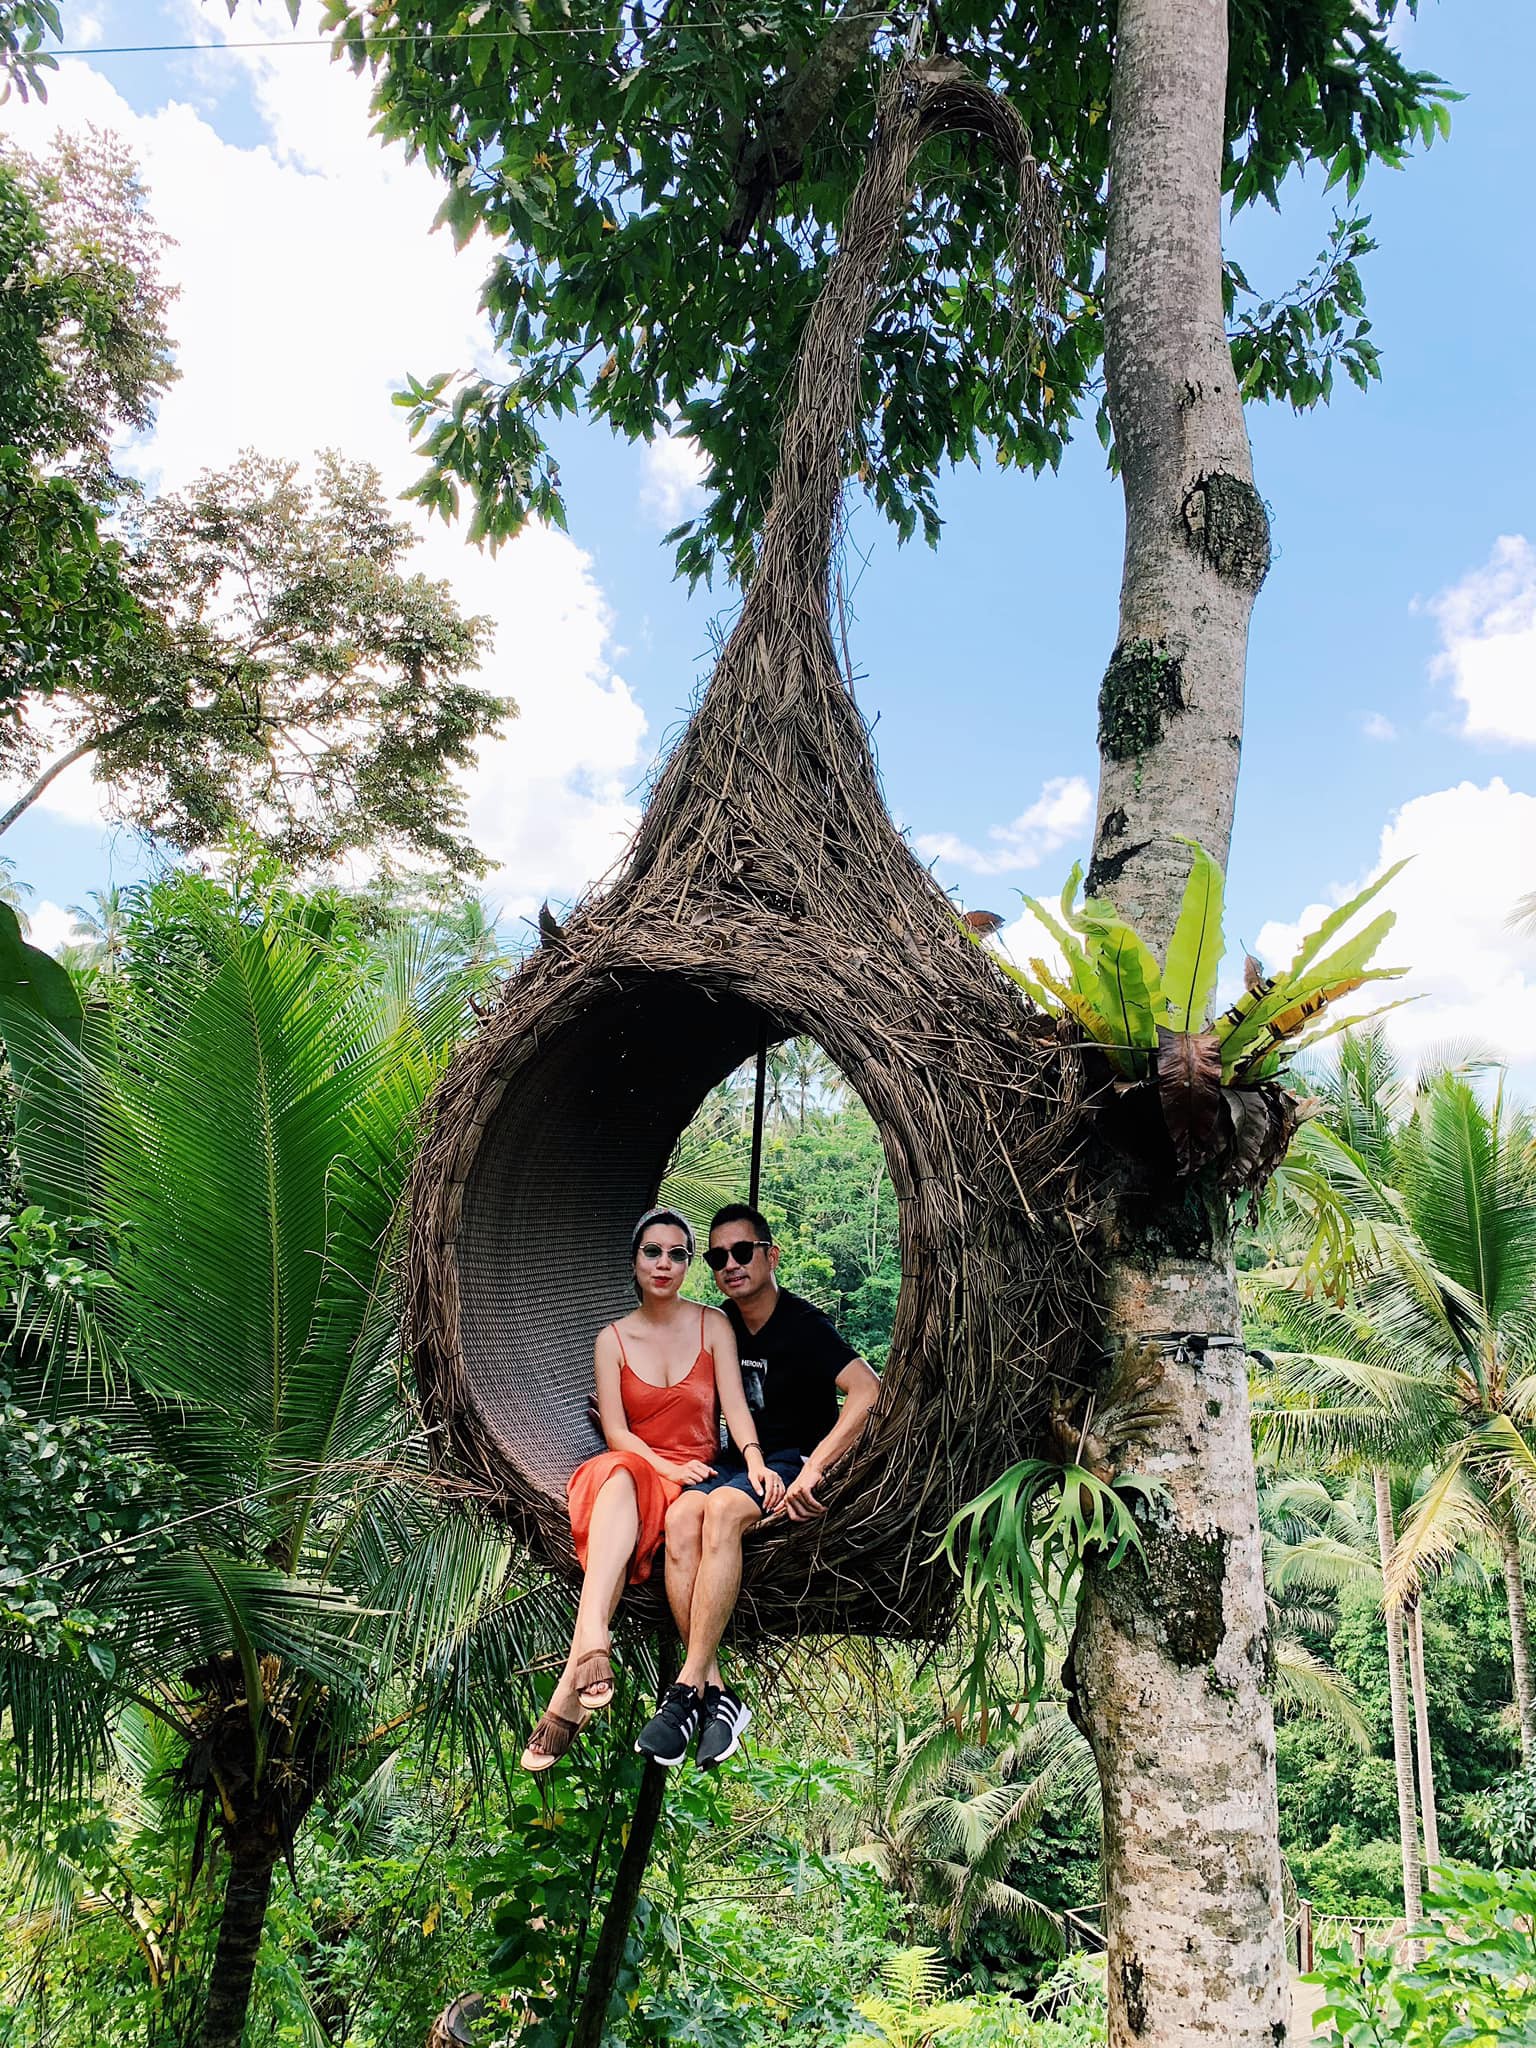 Mặc cho người khen kẻ chê về Bali, cặp vợ chồng doanh nhân vẫn chọn hòn đảo thiên đường để kỷ niệm 1 năm ngày cưới - Ảnh 13.